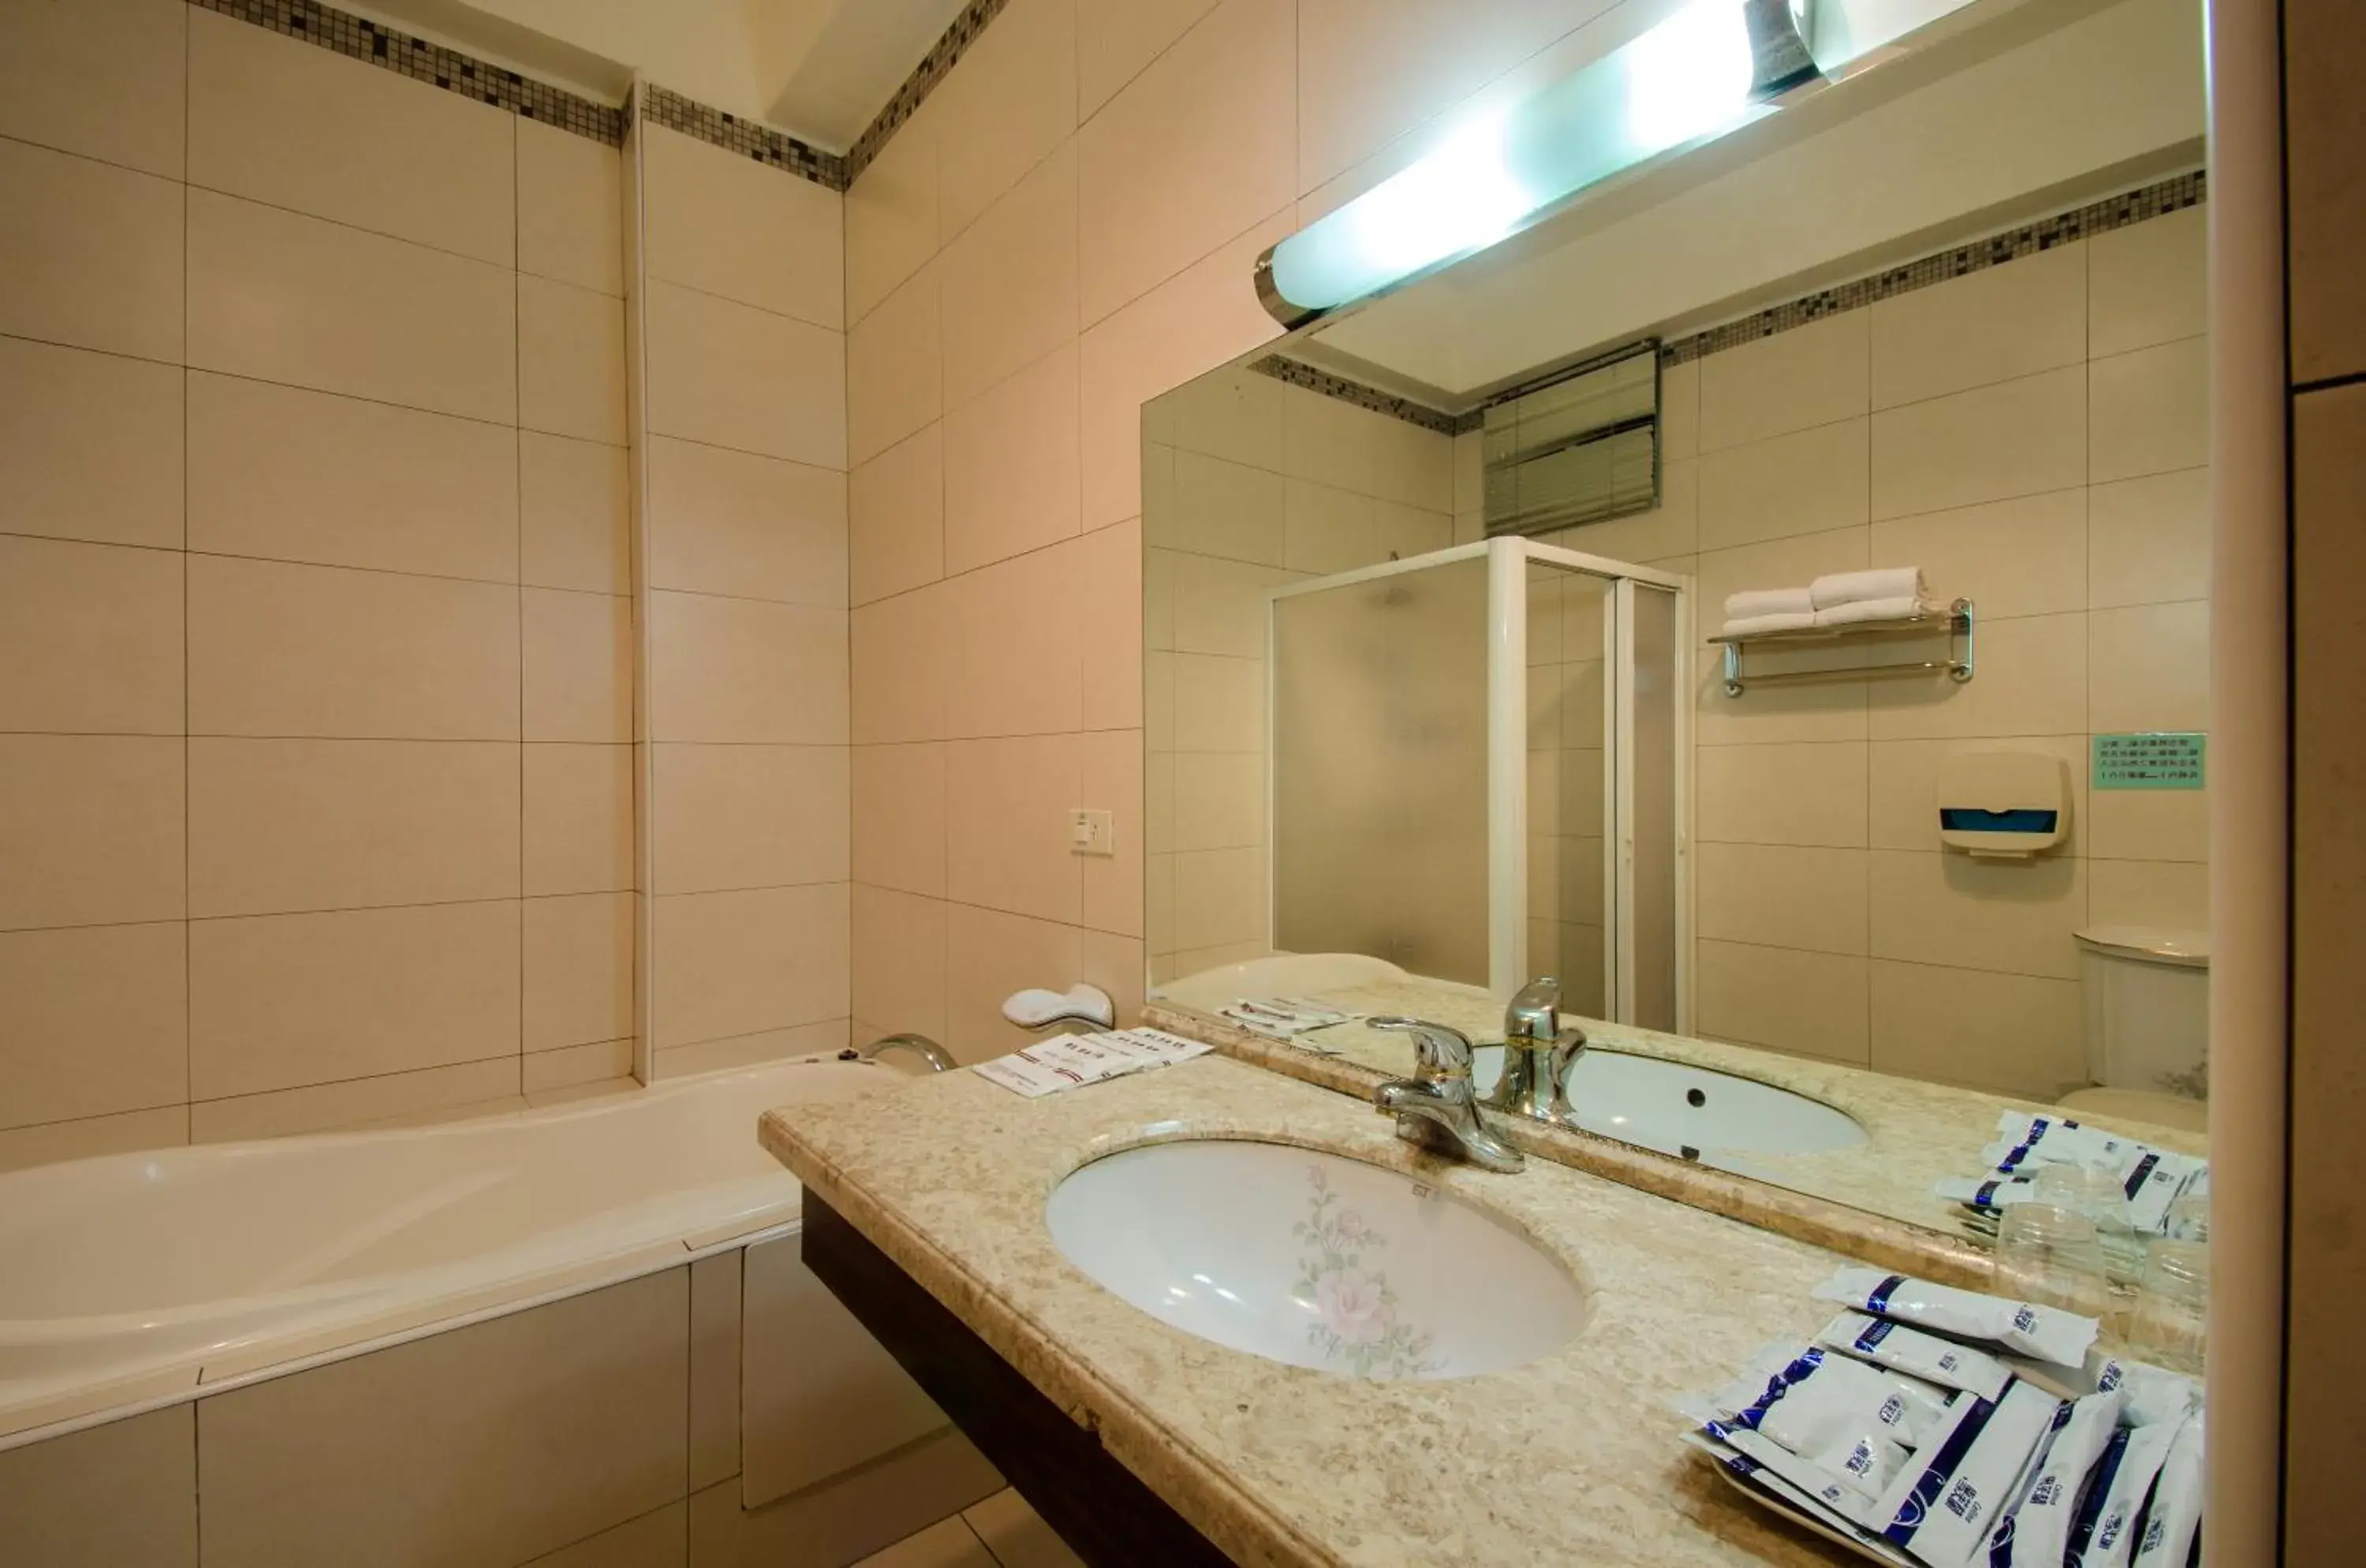 Bathroom in wogo hotel